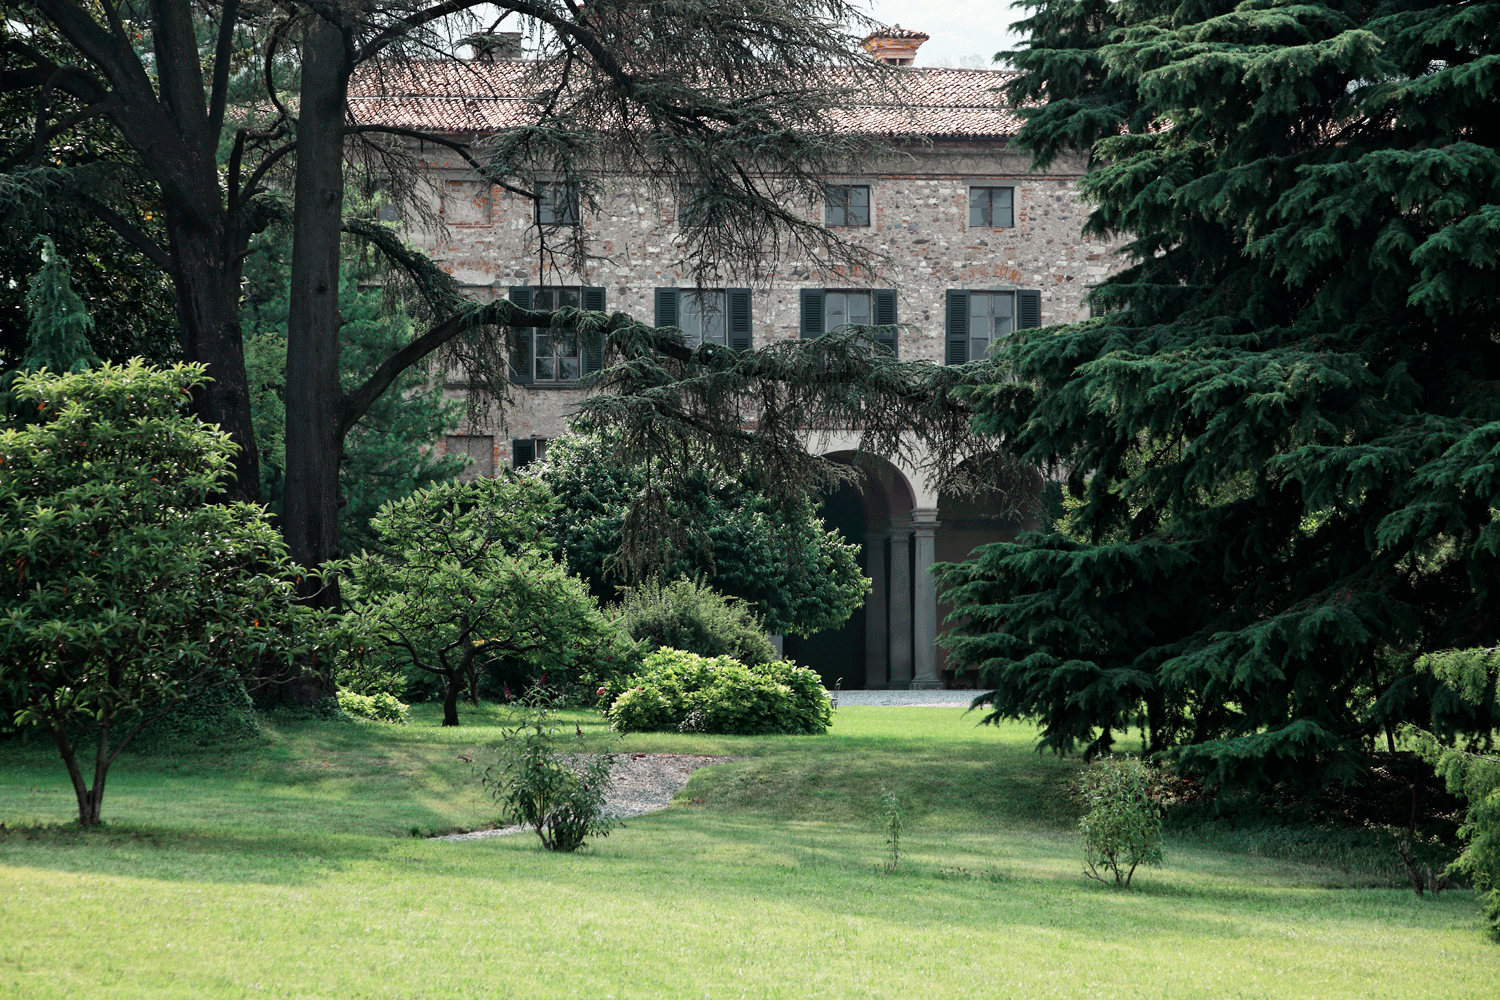 Palazzo Monti della Corte, Franciacorte, Italy